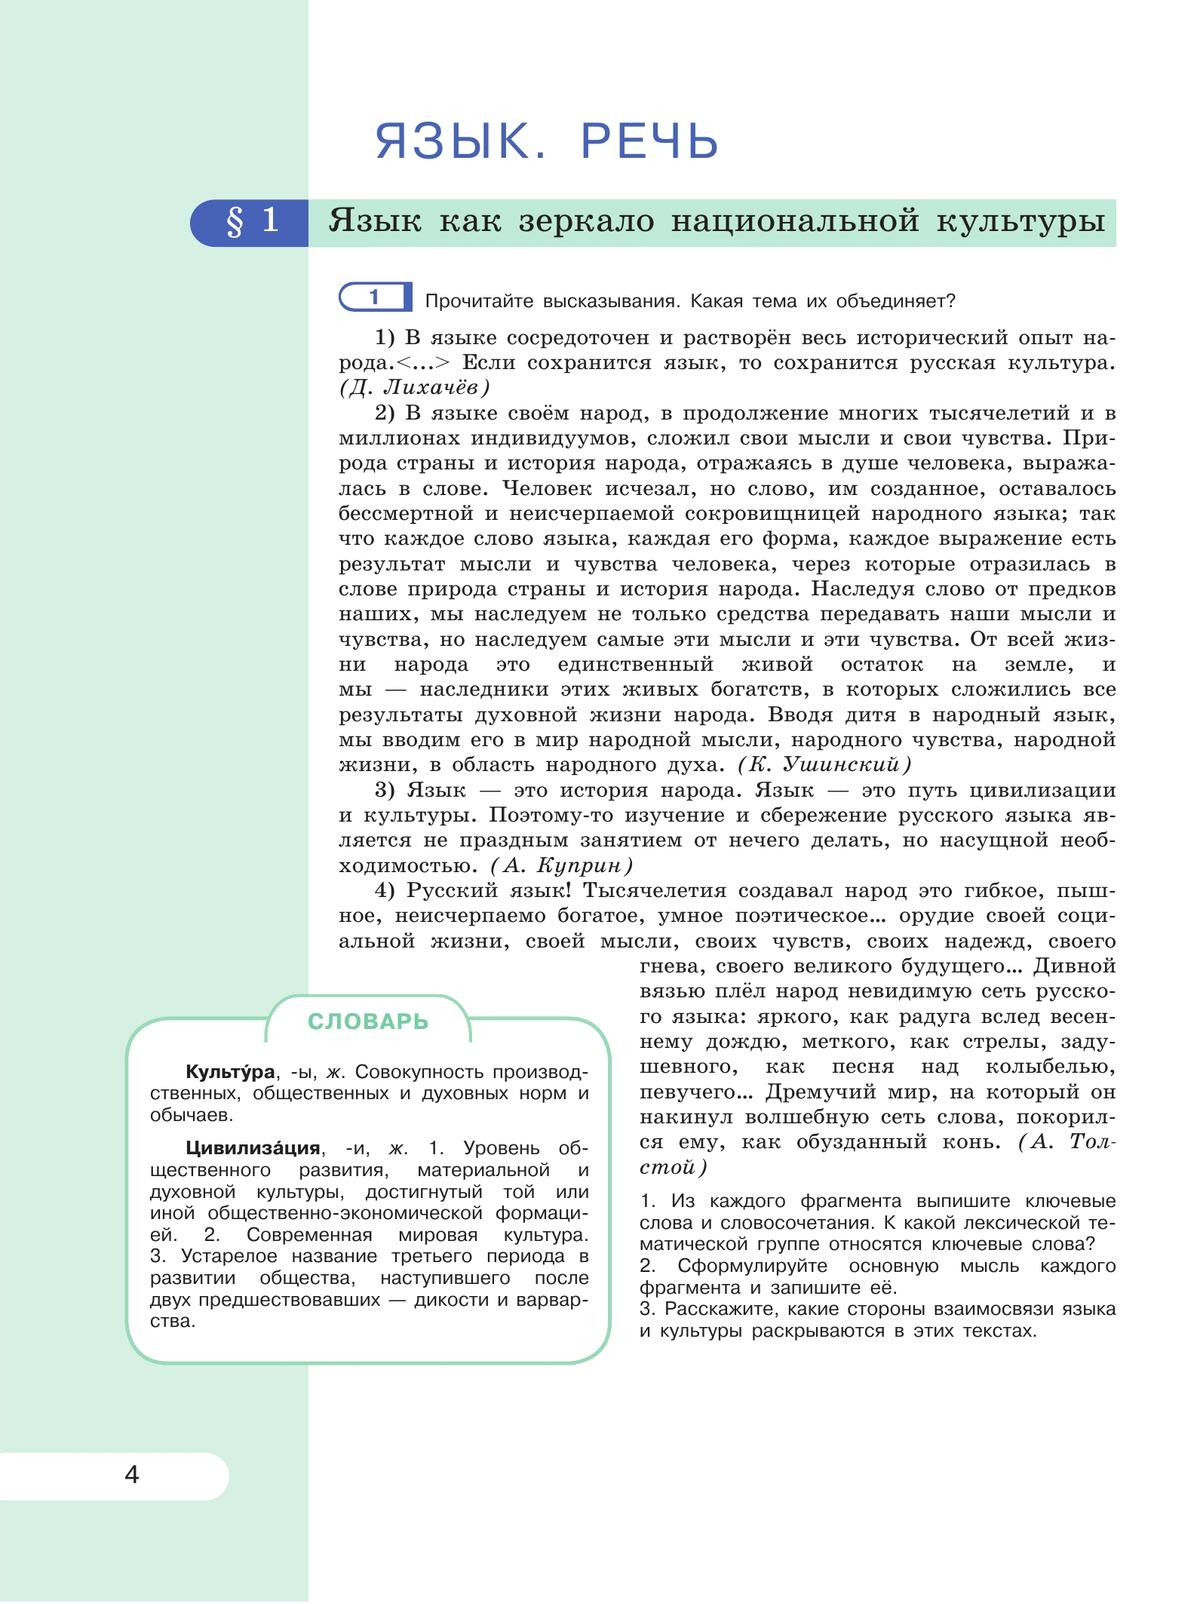 Русский язык. 9 класс. Учебник 11